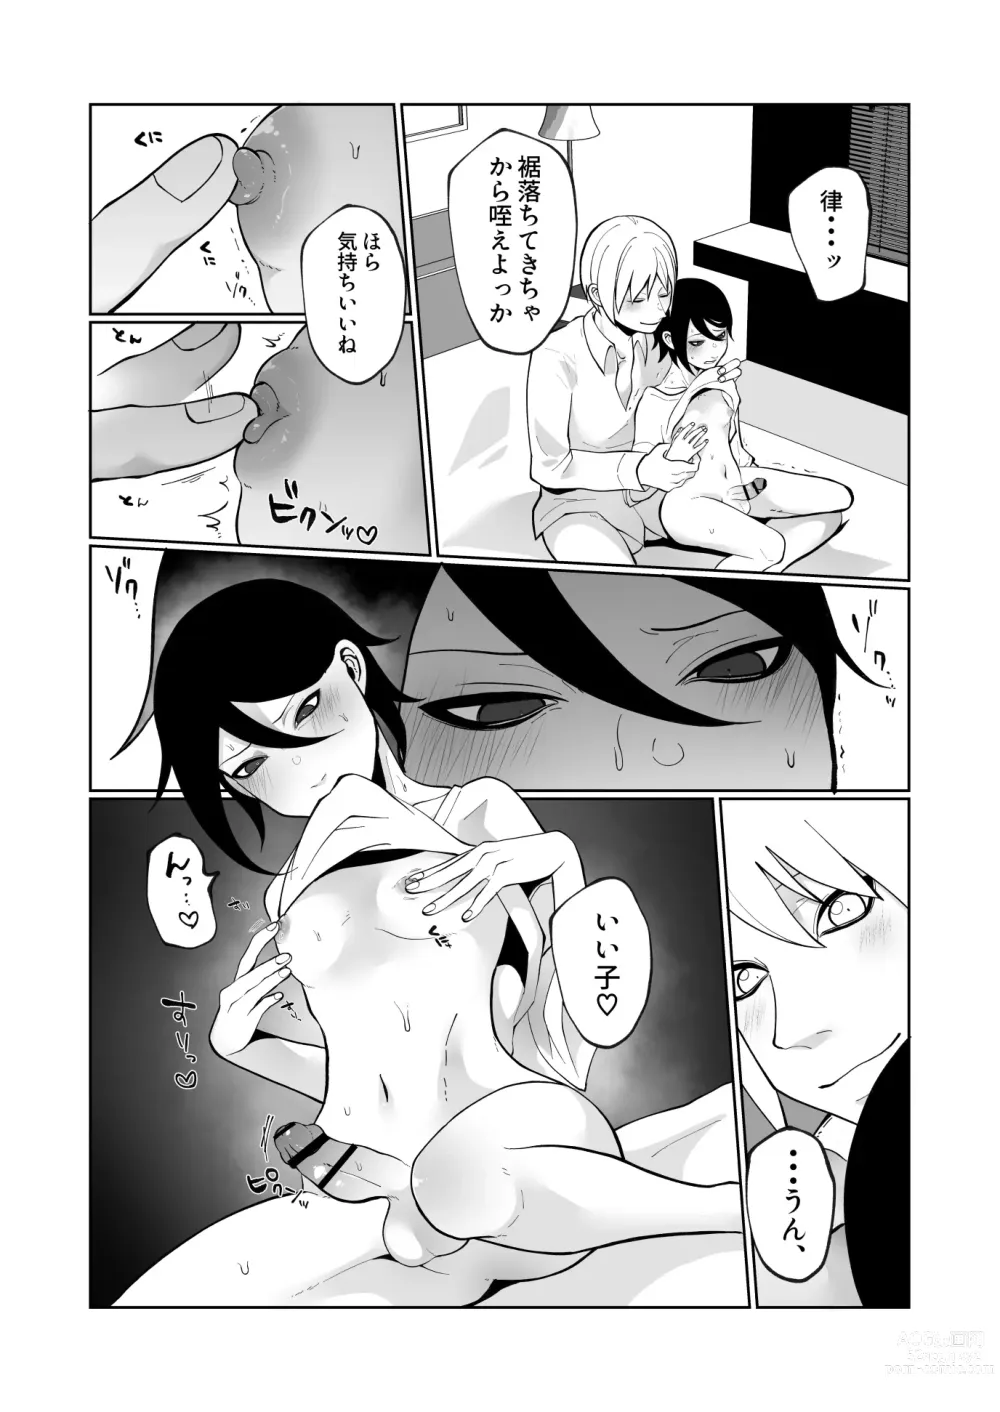 Page 41 of doujinshi Wakaraseru Hazu datta noni Kekkyoku Wakaraserarete Renzoku Shiofuki Zecchou Saserareta